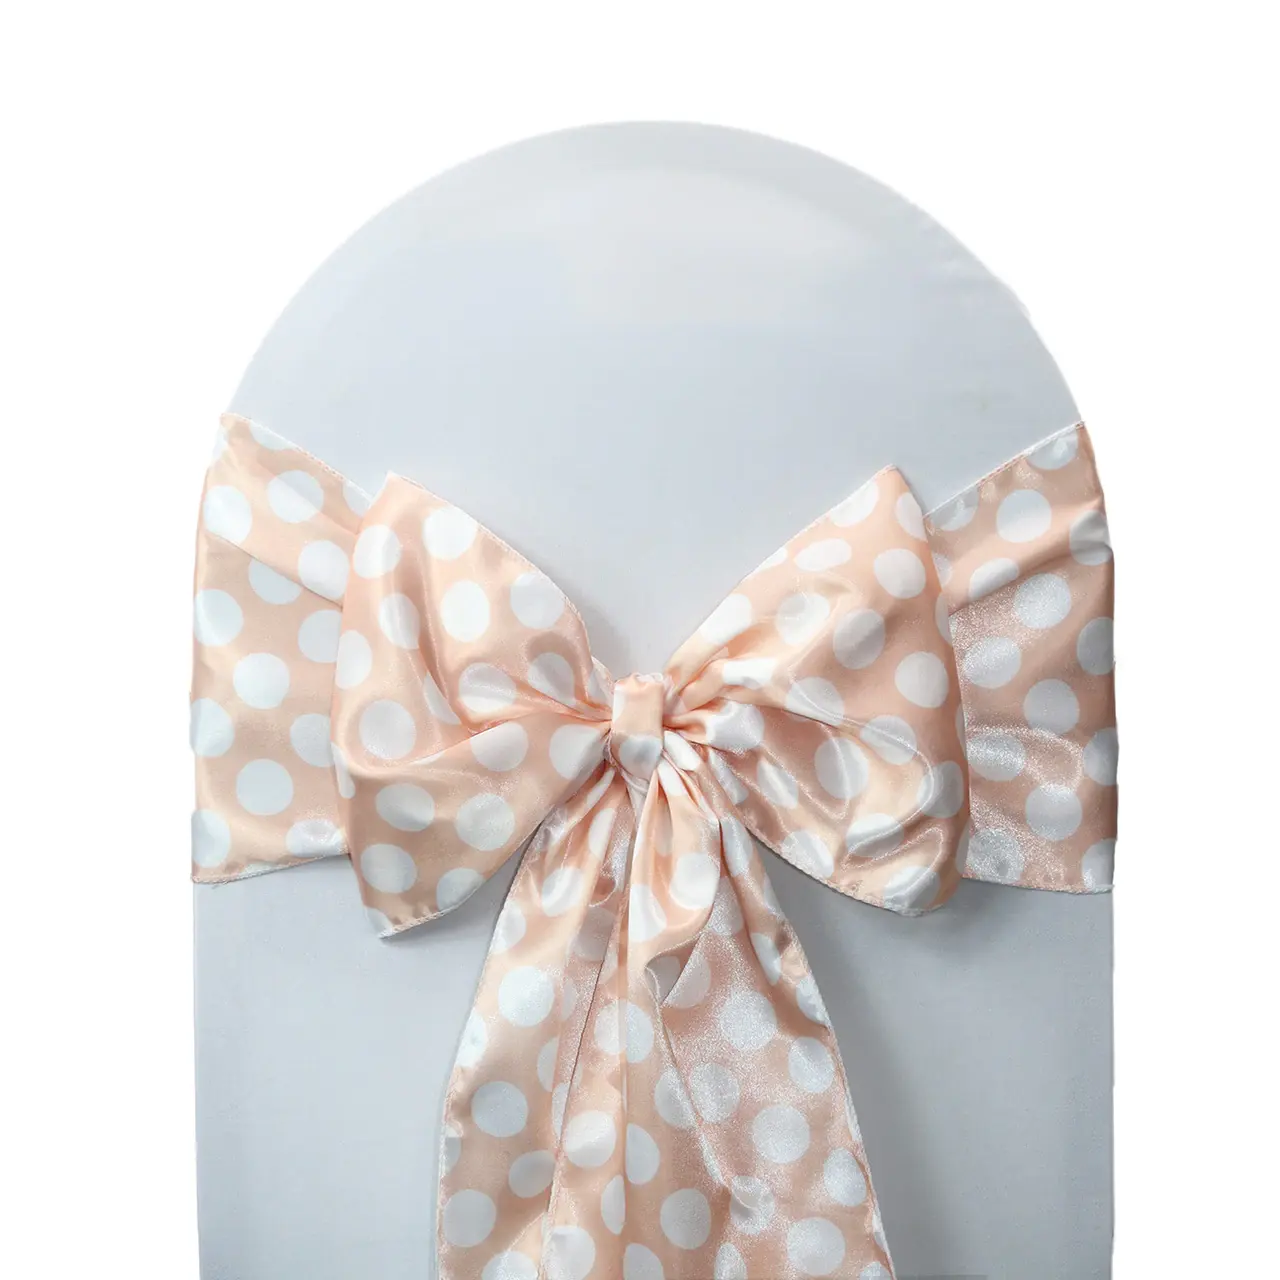 Neueste Design Elegante Luxus Blush Pink Weiß Satin Polka Dot Print Stuhl Schärpe und Stuhl bänder